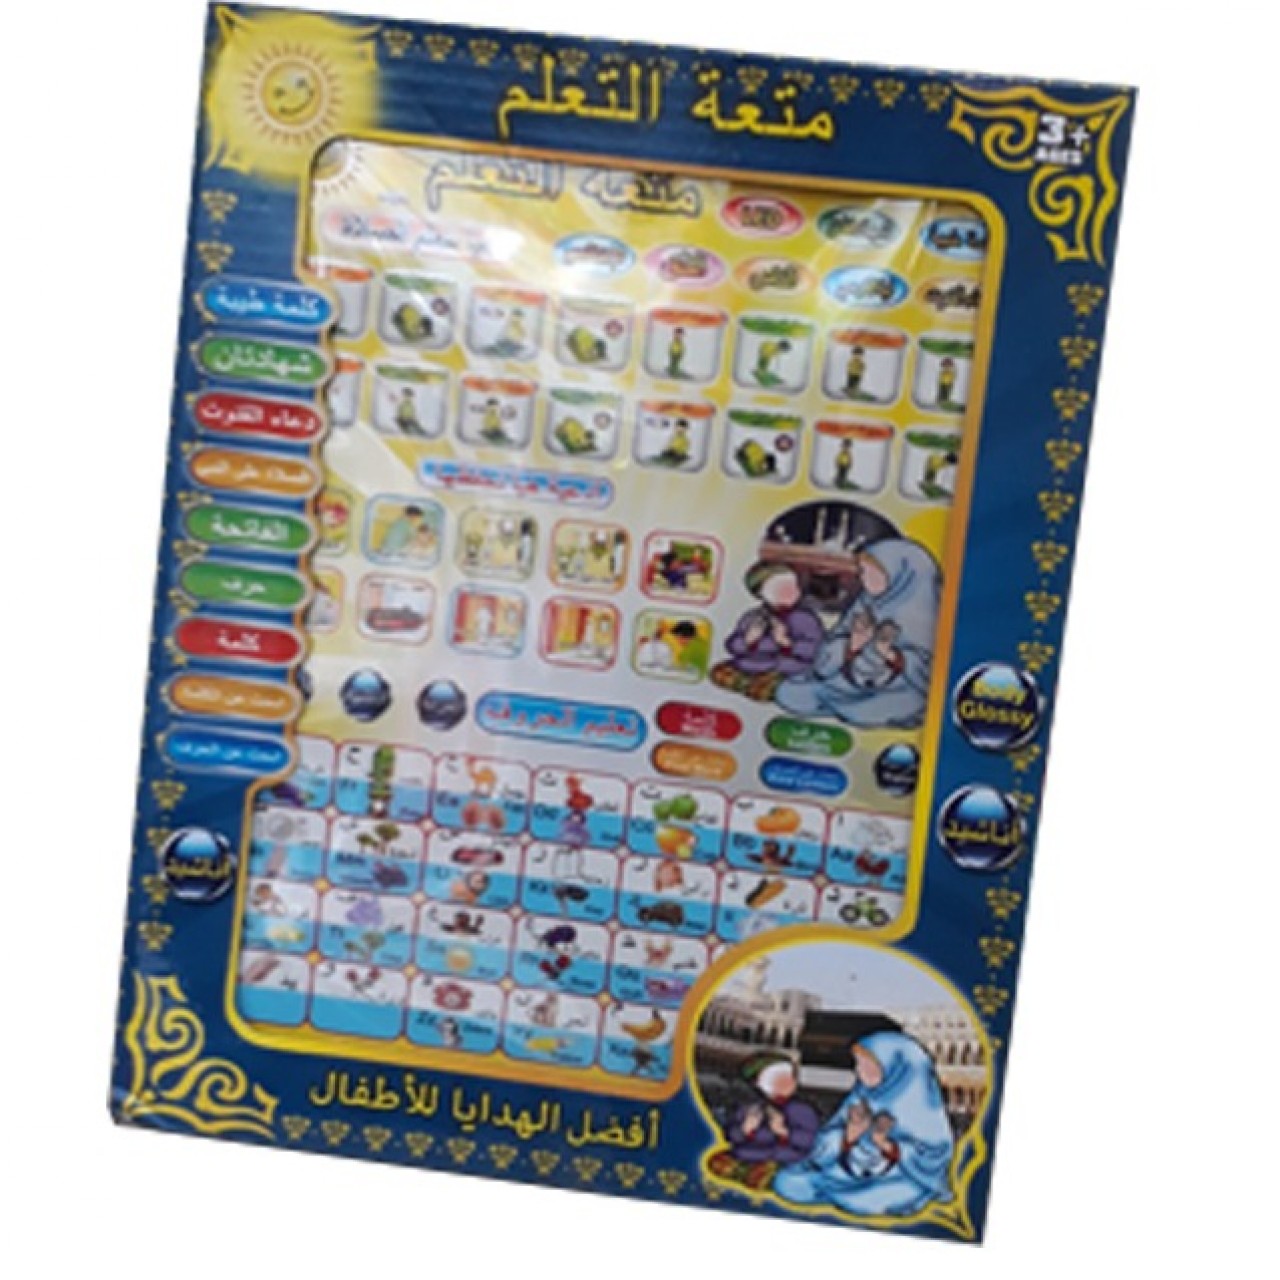 Islamic Tablet For Kids - Multiple Function